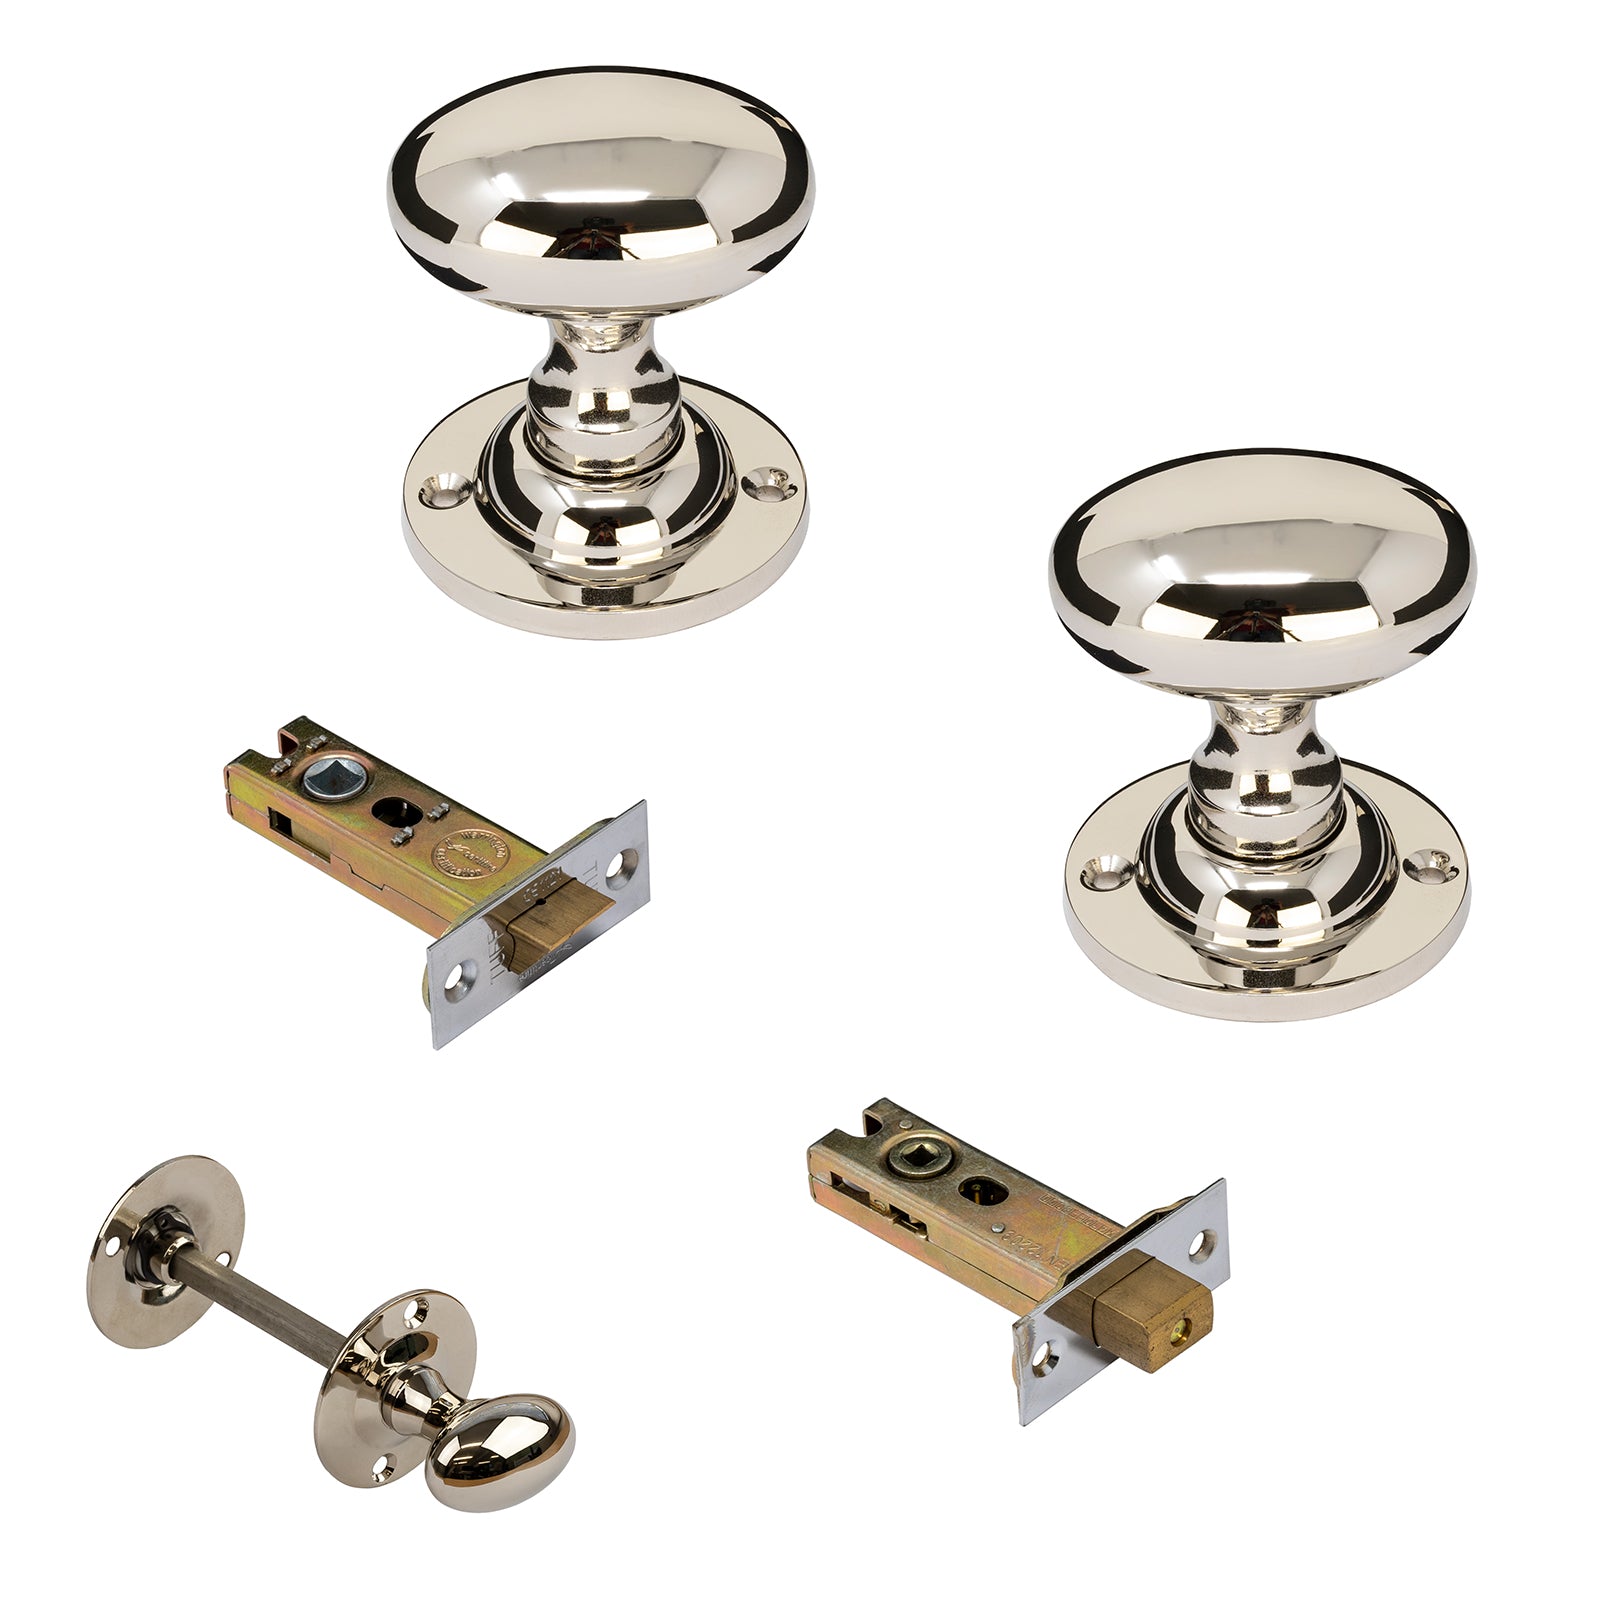 Oval nickel door knobs 3 inch bathroom set